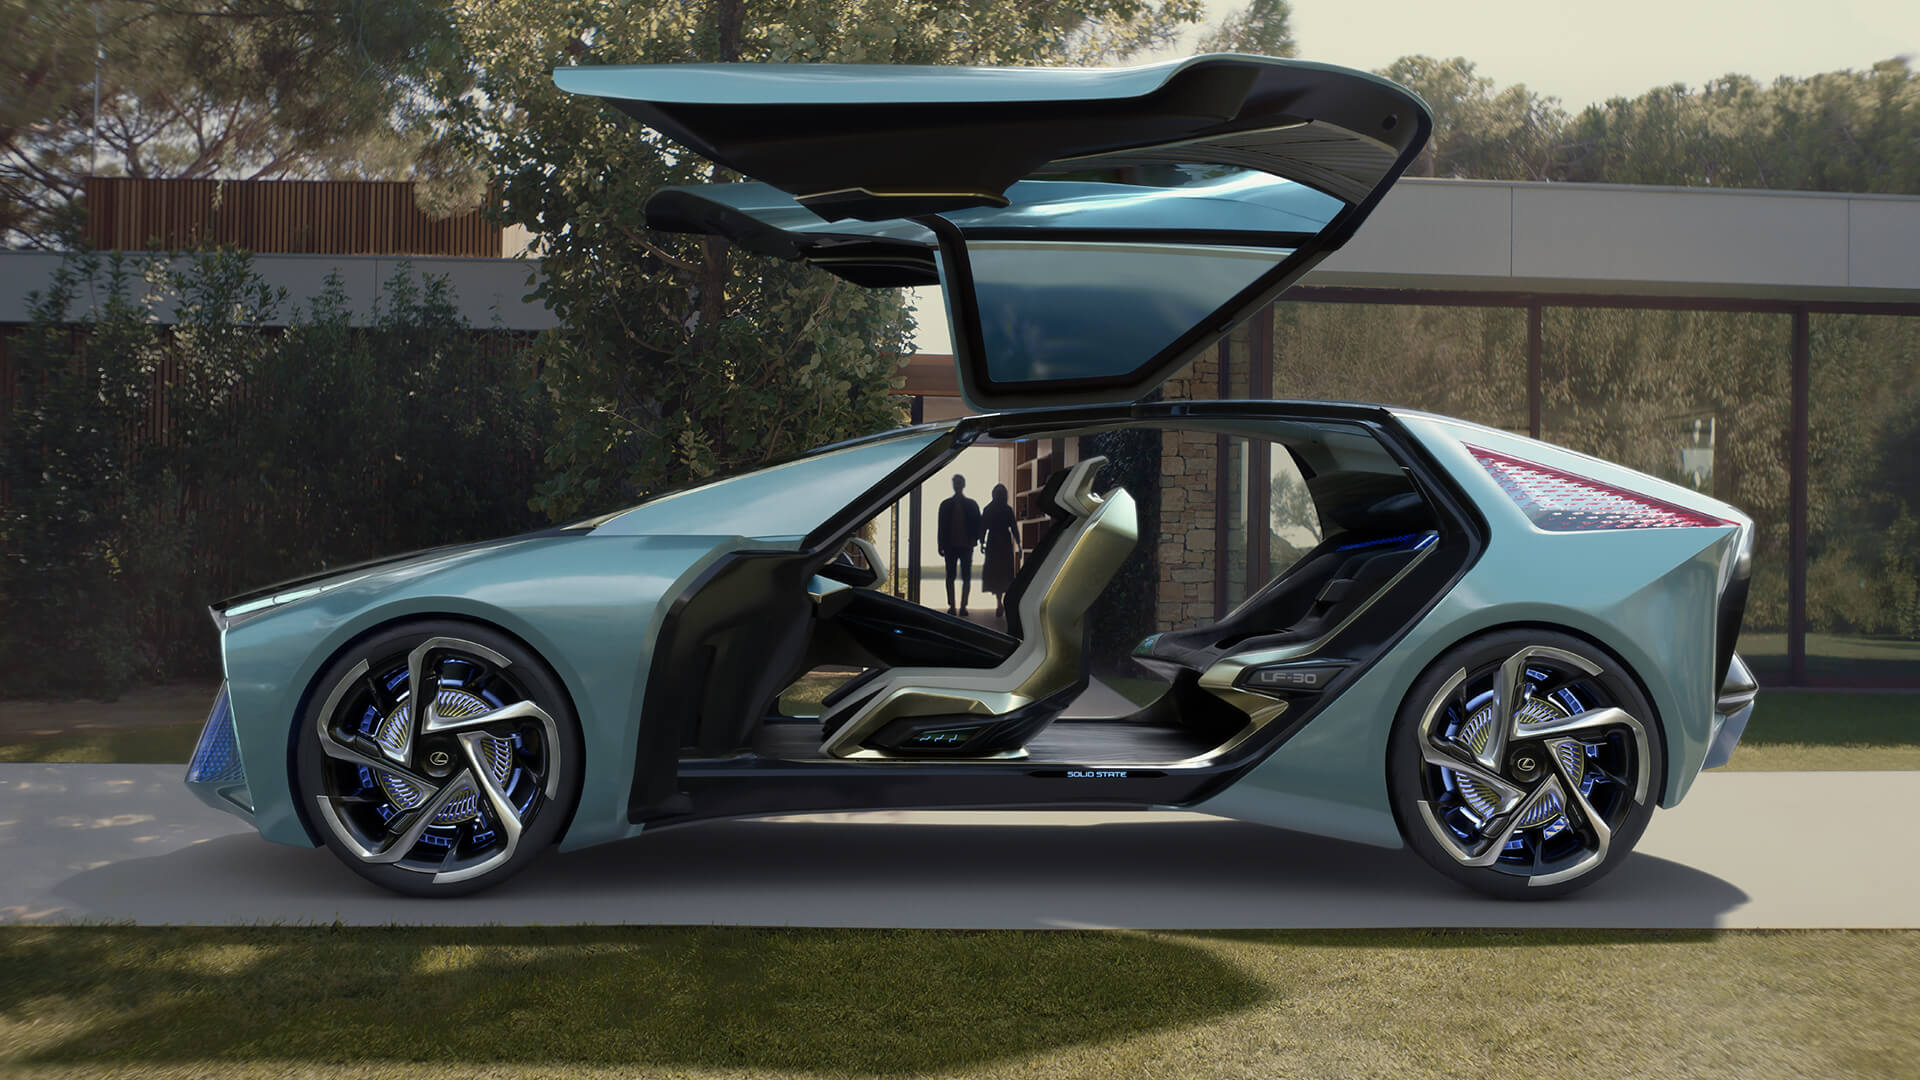 Lexus демонстрирует свое видение электромобилей будущего, представляя электрический концепт-кар LF-30 electrified